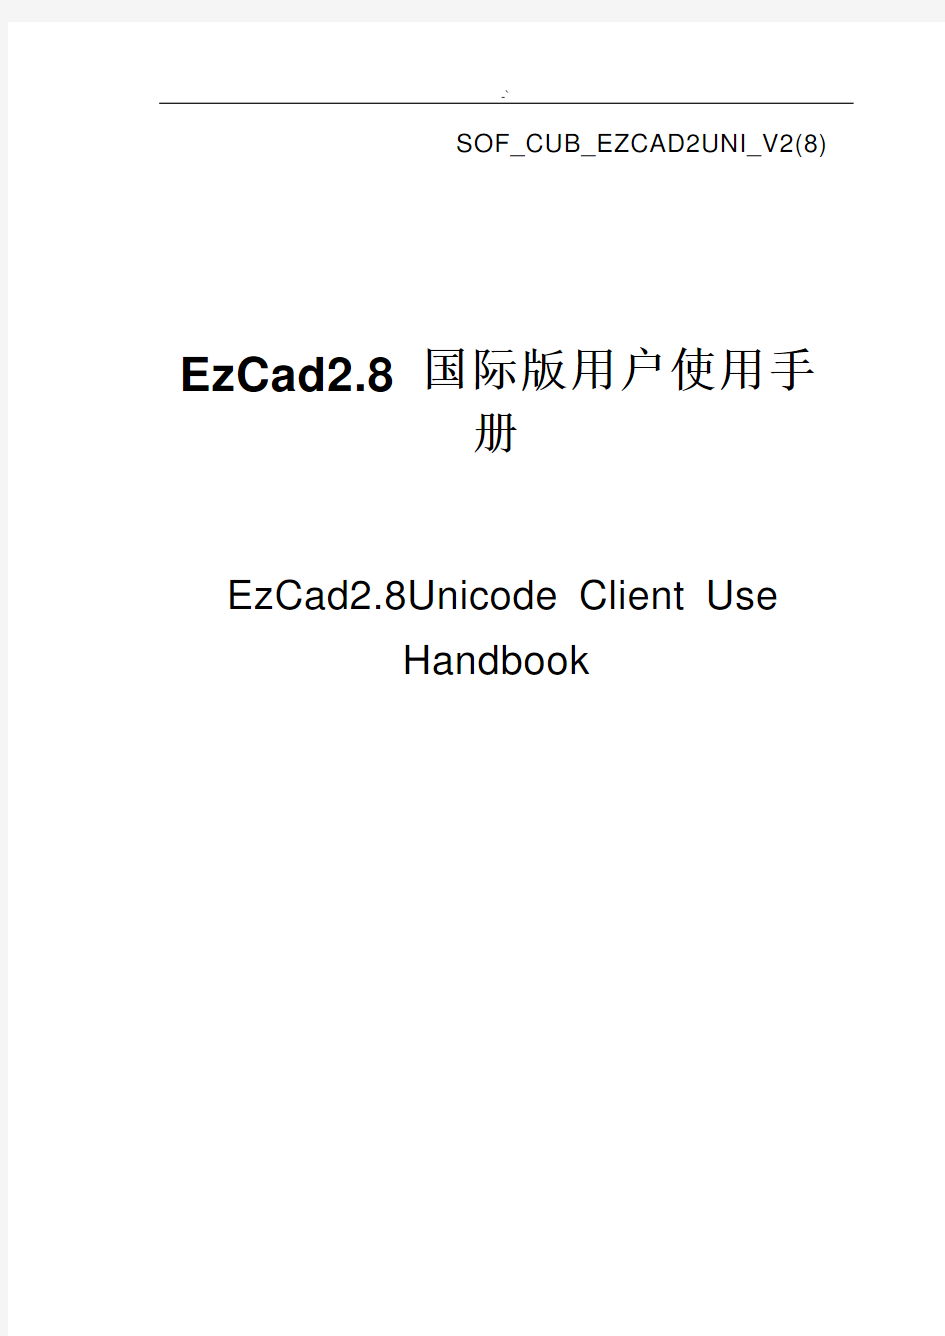 EzCad软件使用使用说明